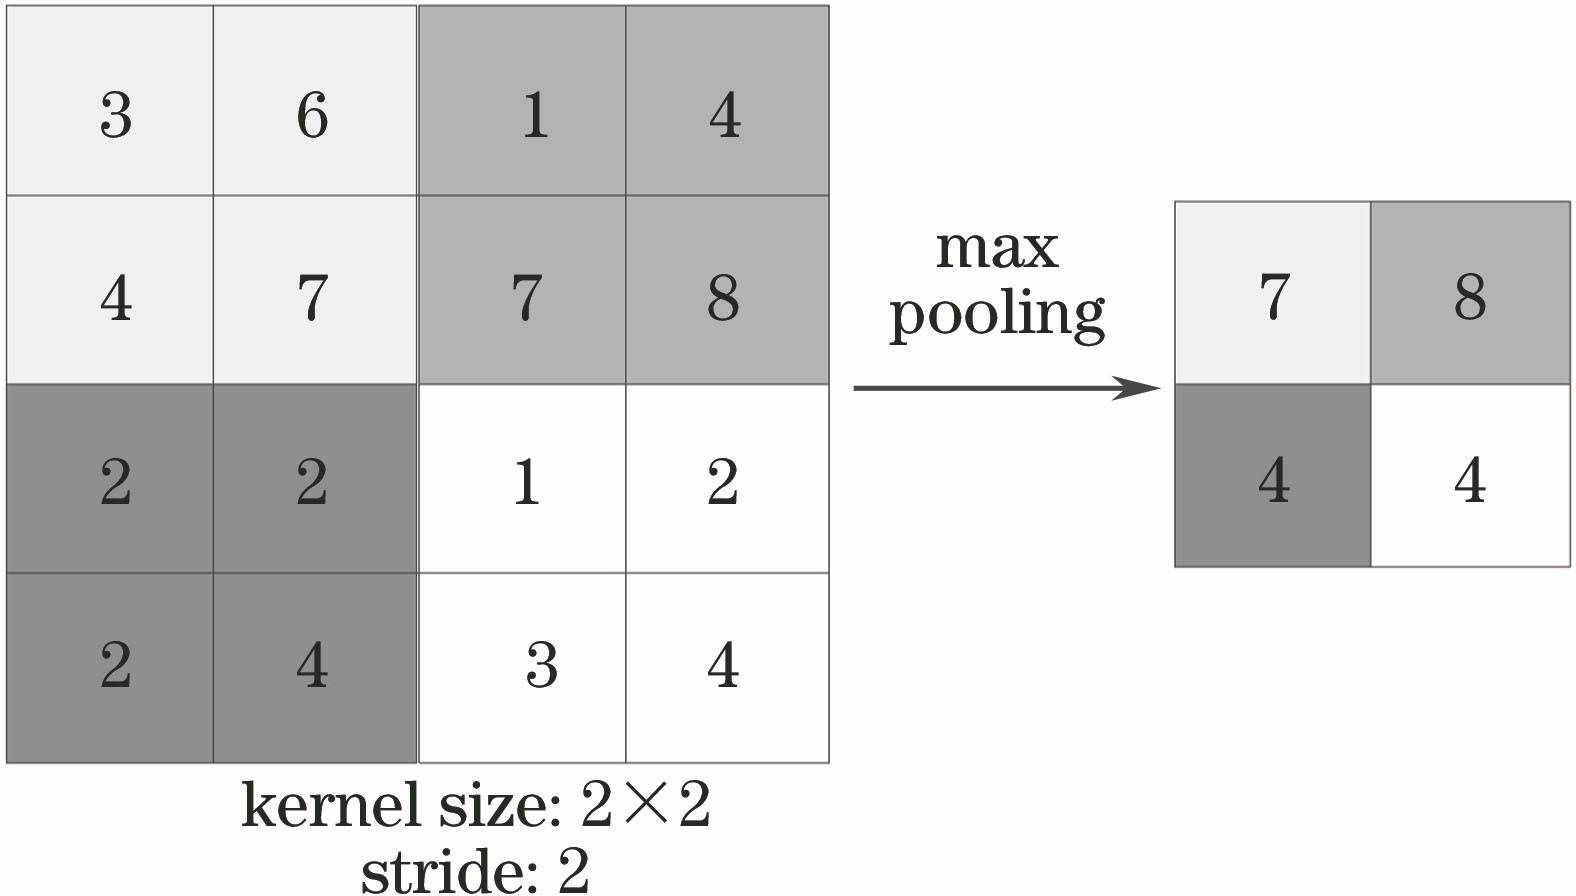 Maximum pooling schematic